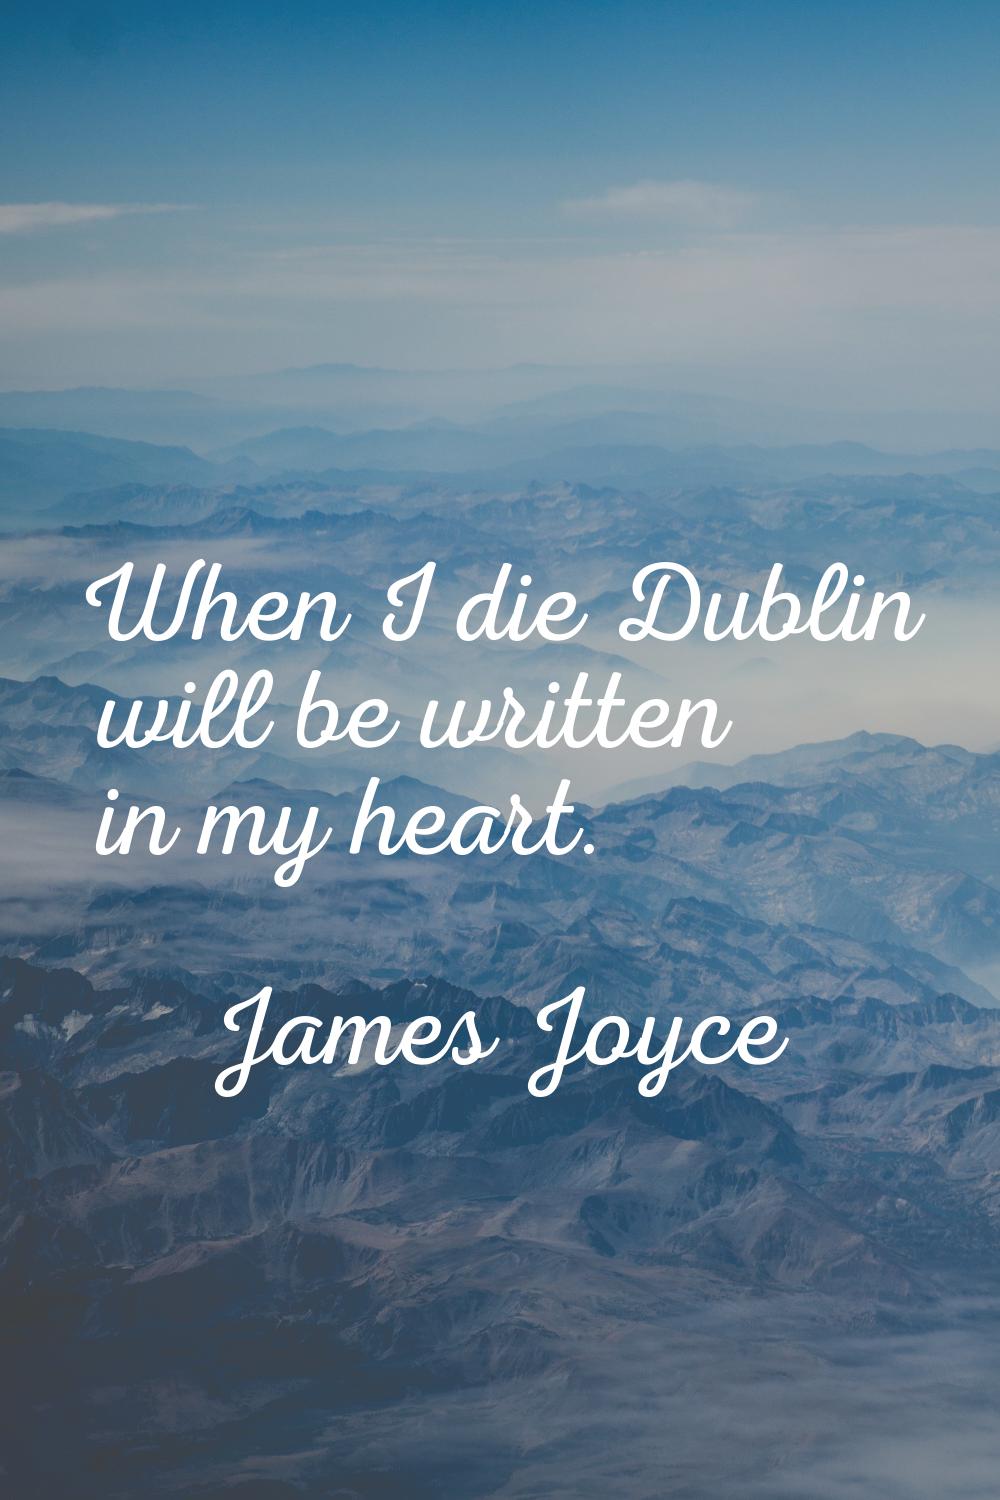 When I die Dublin will be written in my heart.